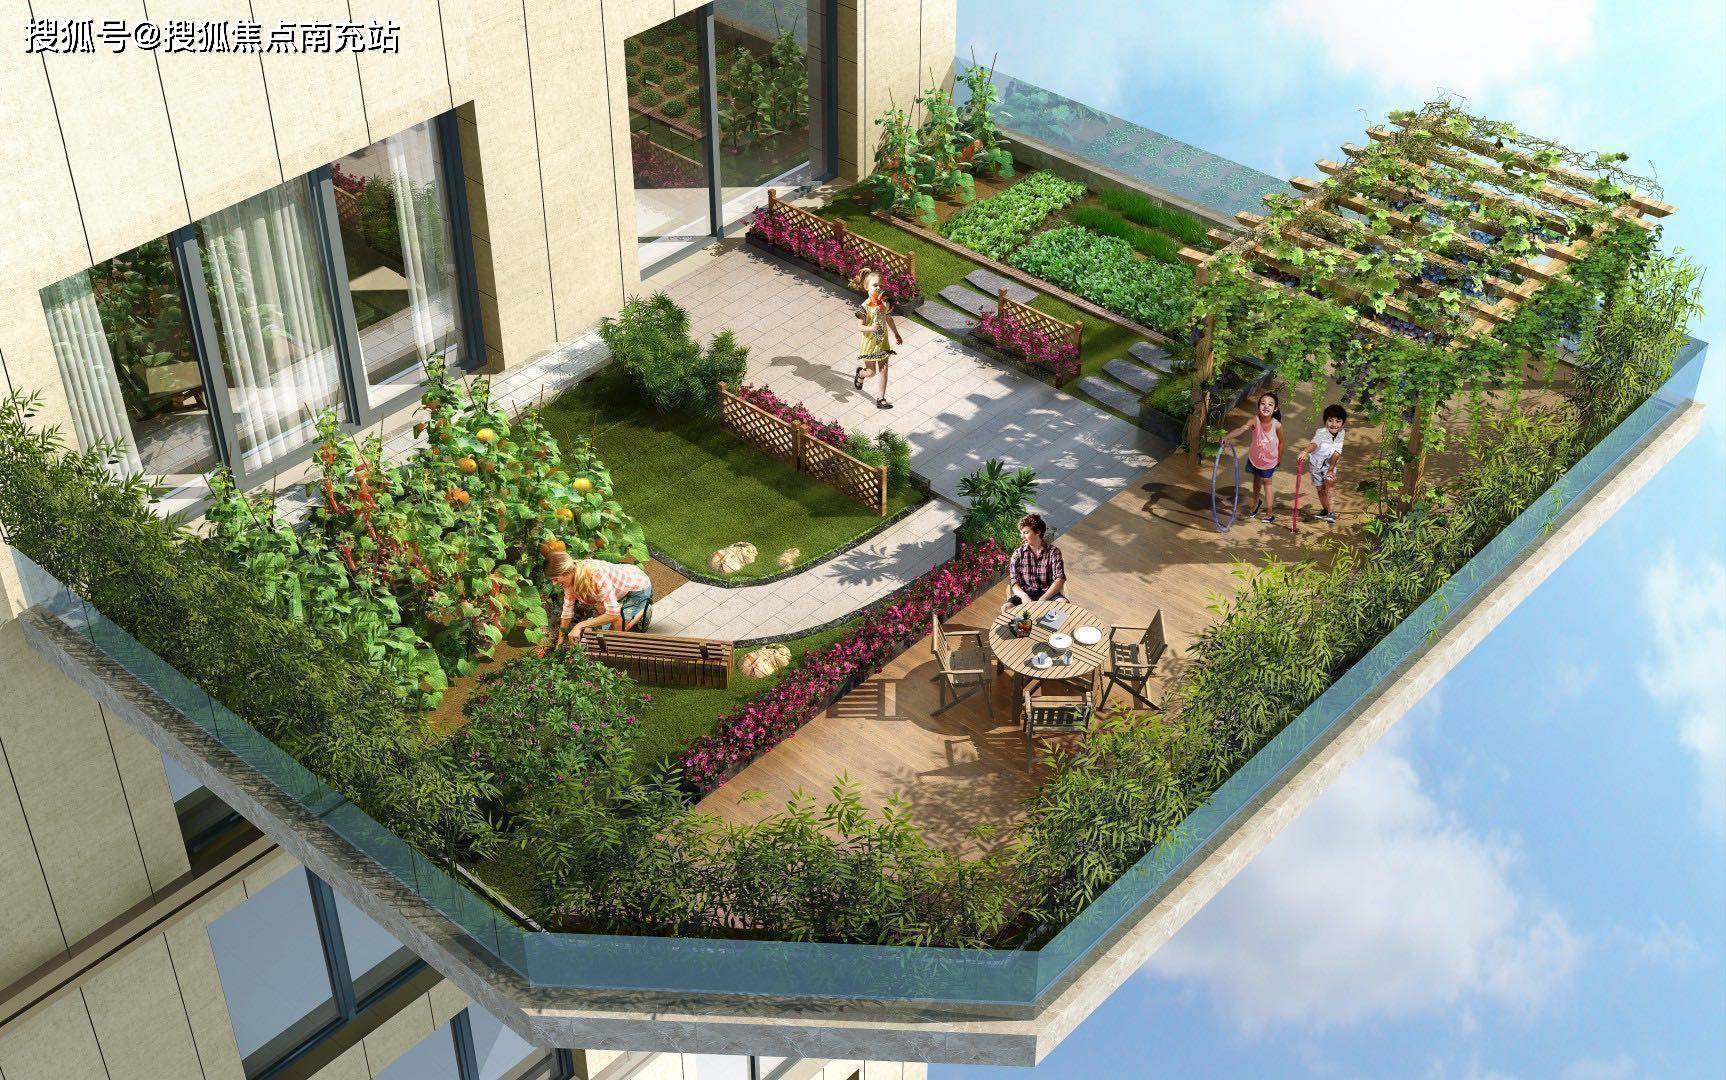 项目类型:类四代建筑,围合式建筑,超大中庭,户户享有私家花园在售面积